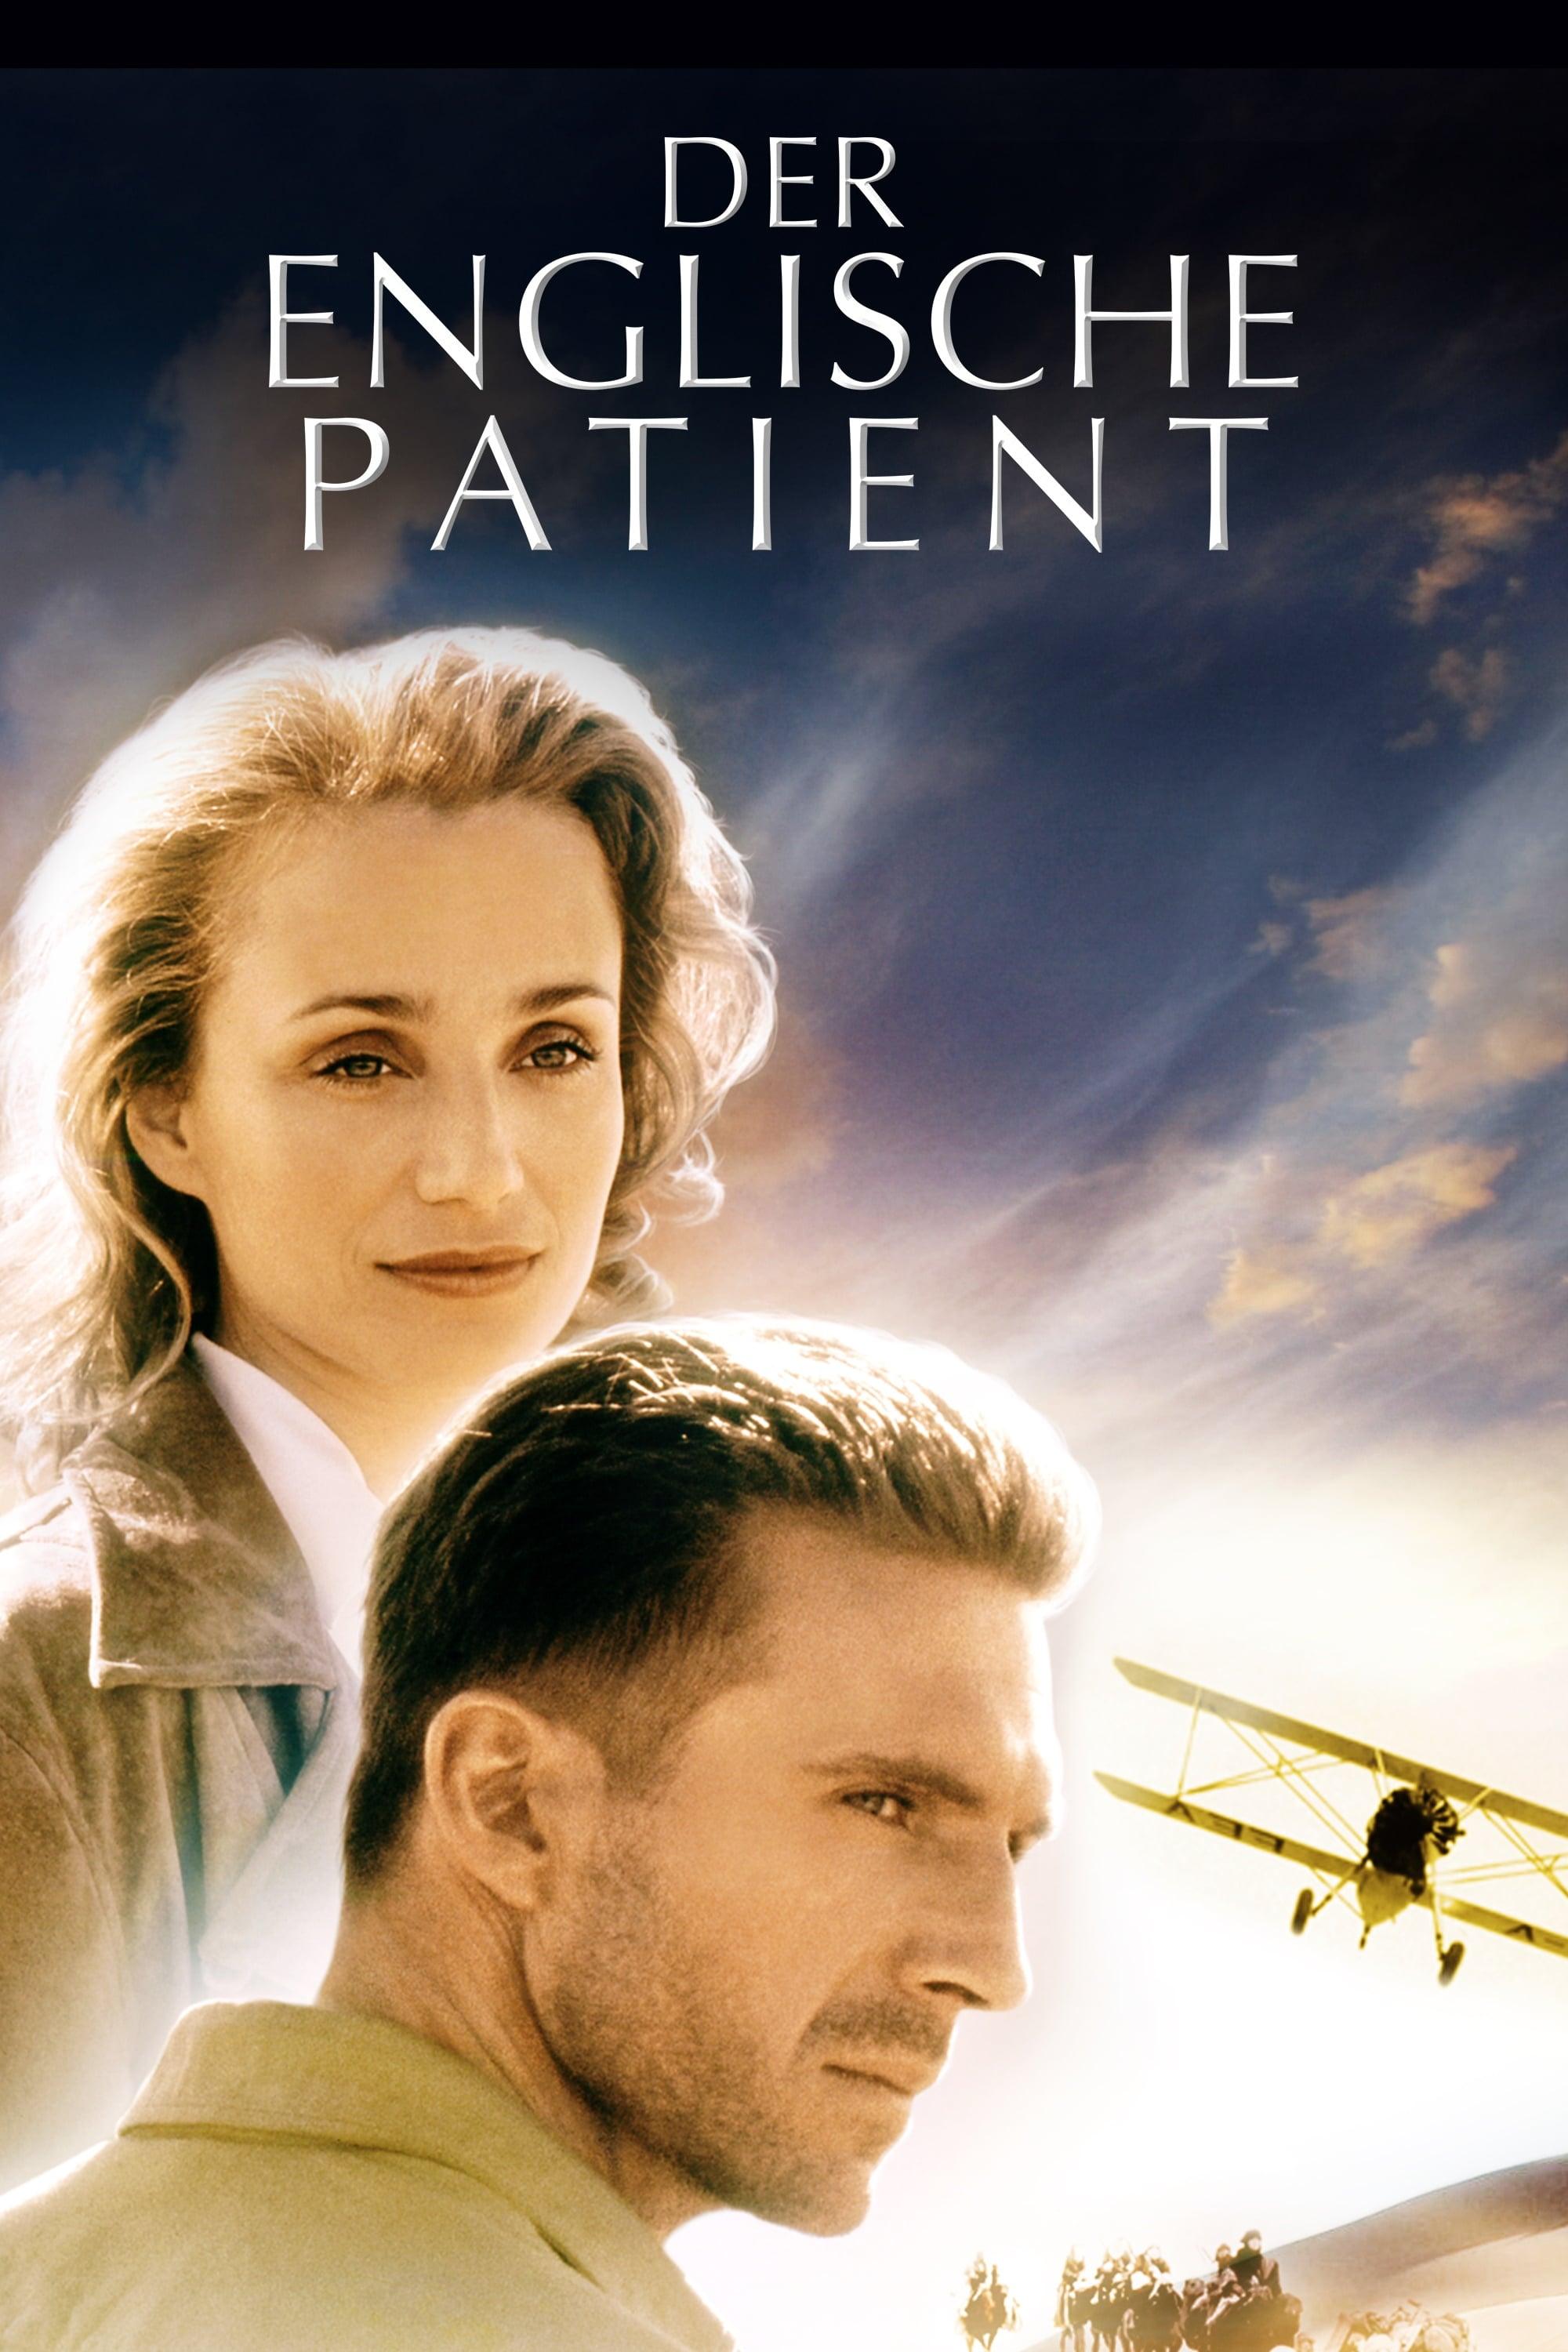 Der englische Patient poster